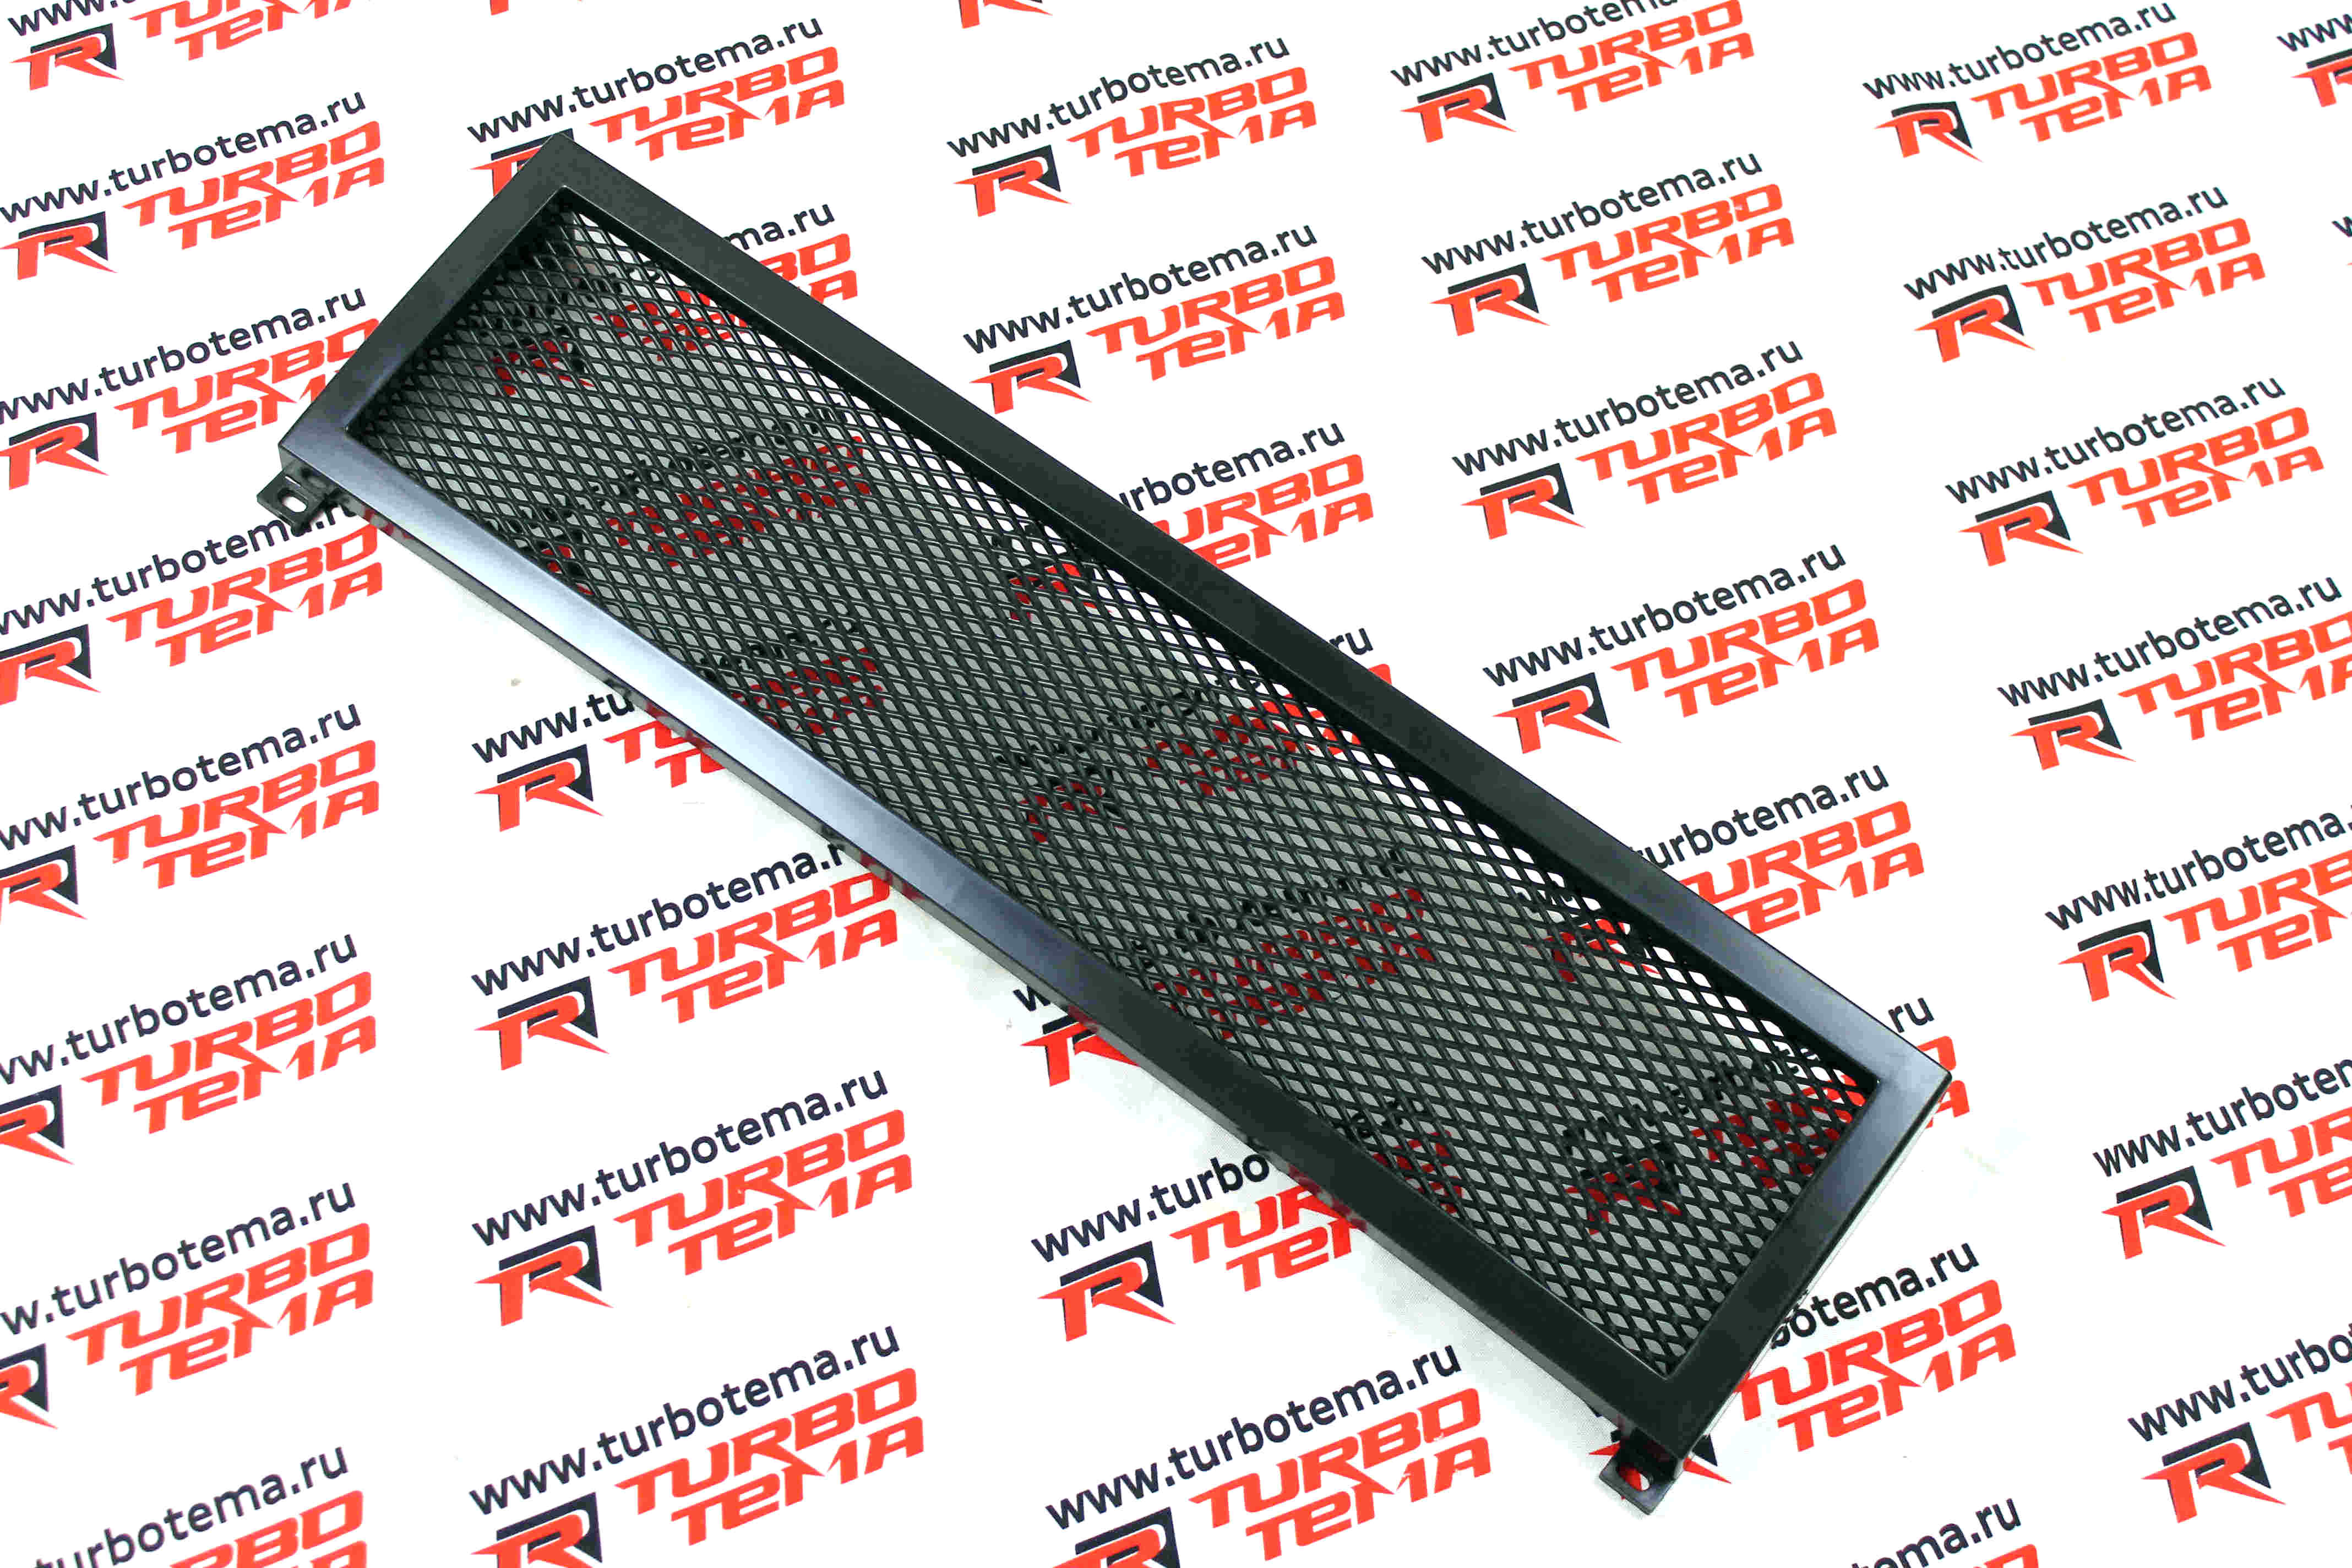 Решетка радиатора для а/м ВАЗ 2105, тюнинг (сетка). Фото �2